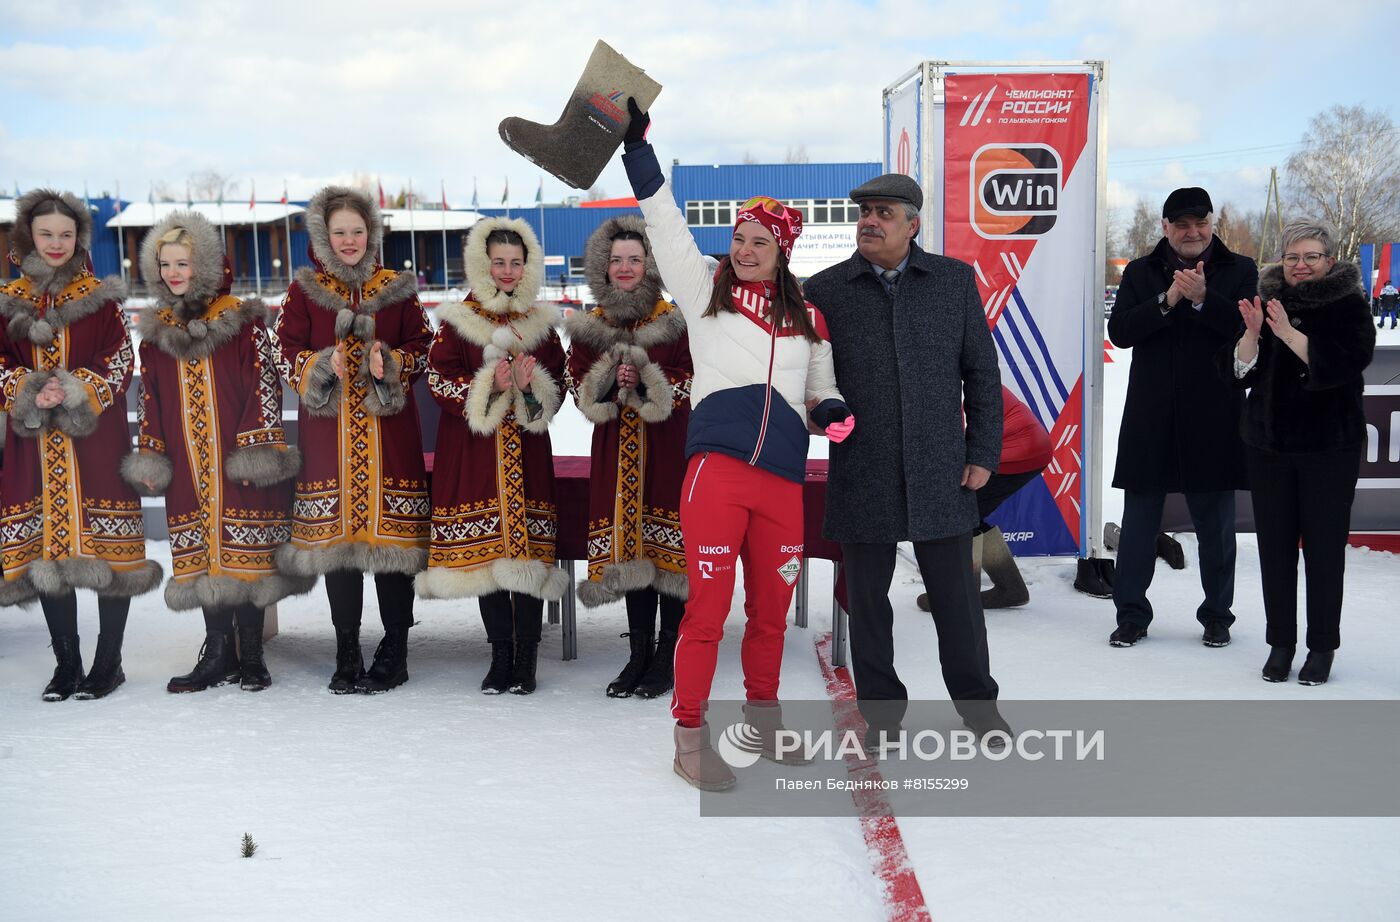 Лыжные гонки. Чемпионат России. Женщины. Эстафета